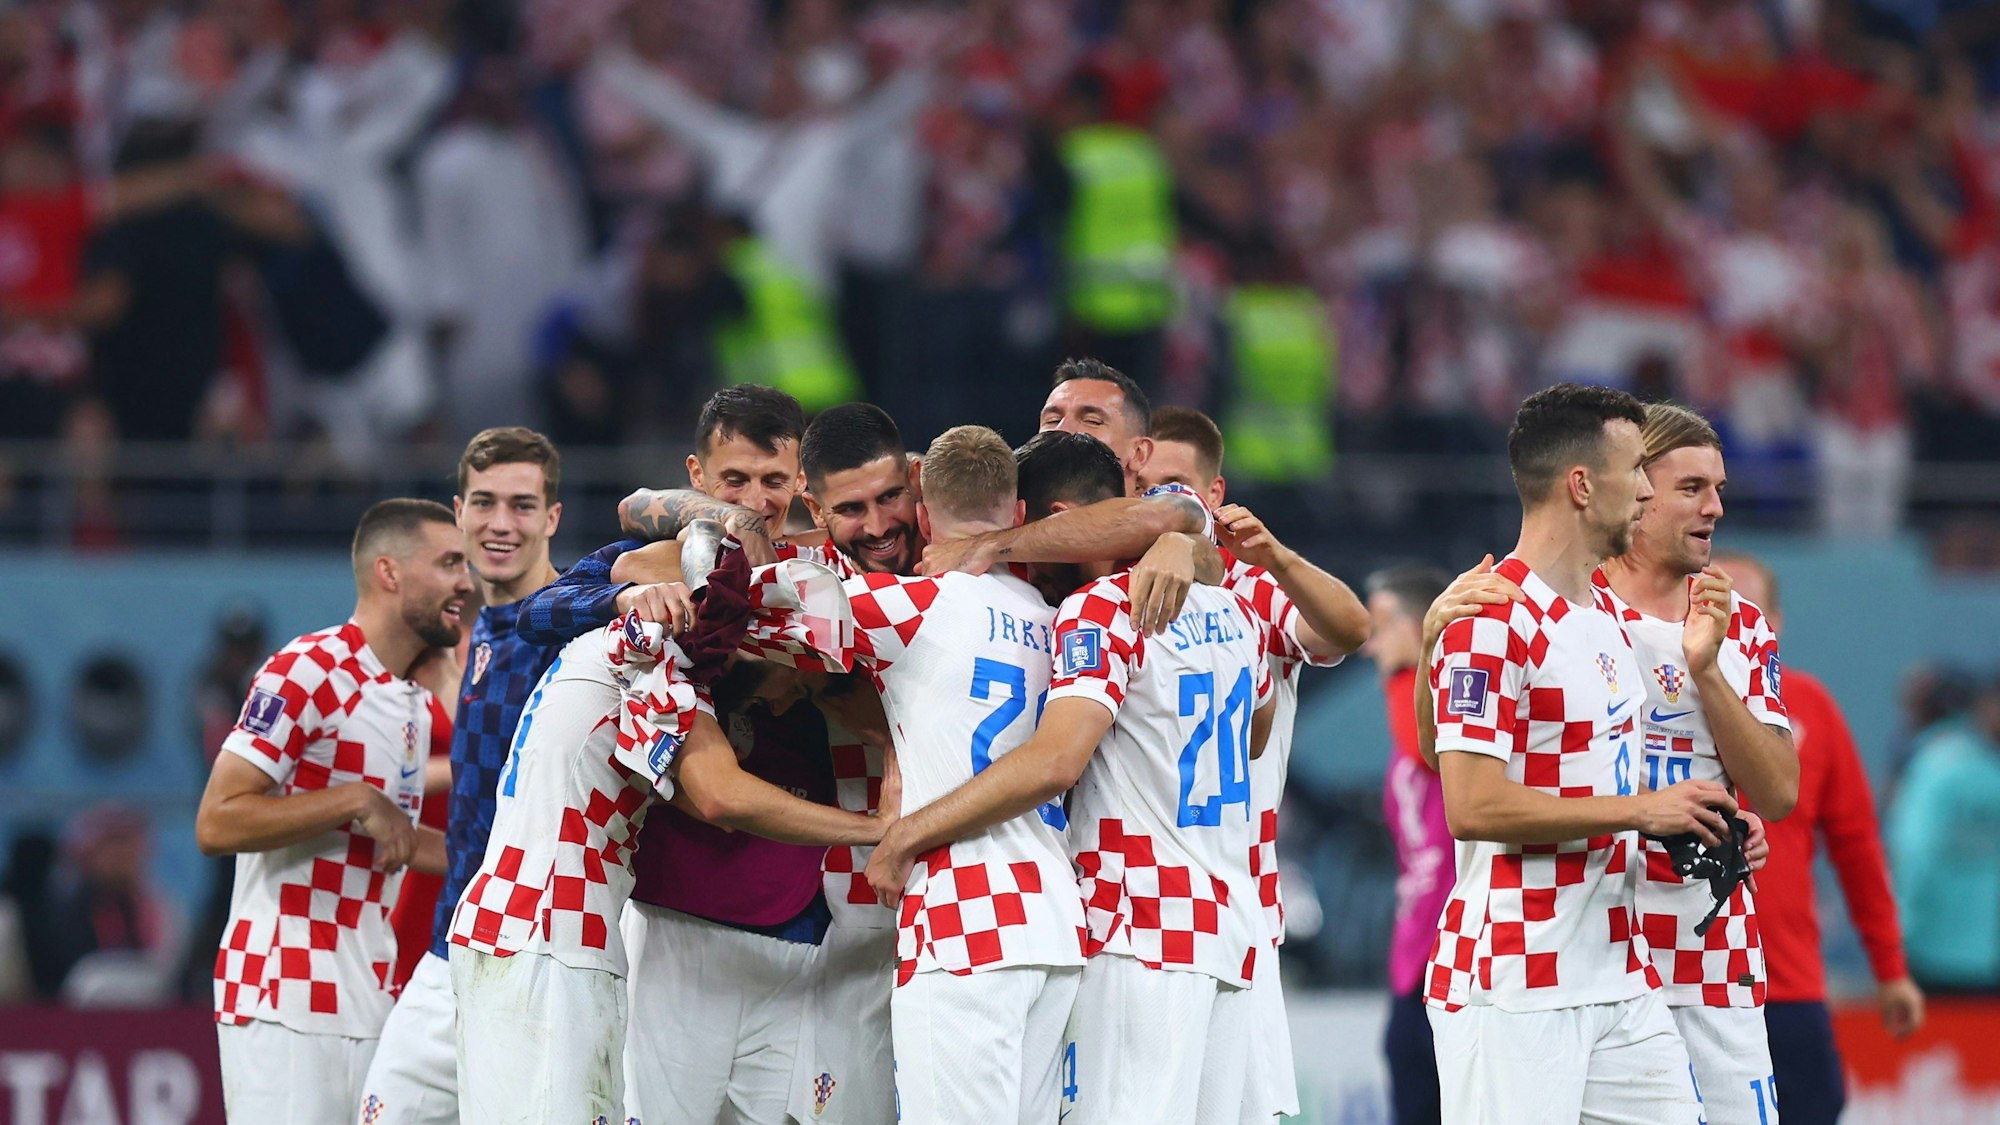 Spieler aus Kroatien stehen nach dem Spiel zusammen.